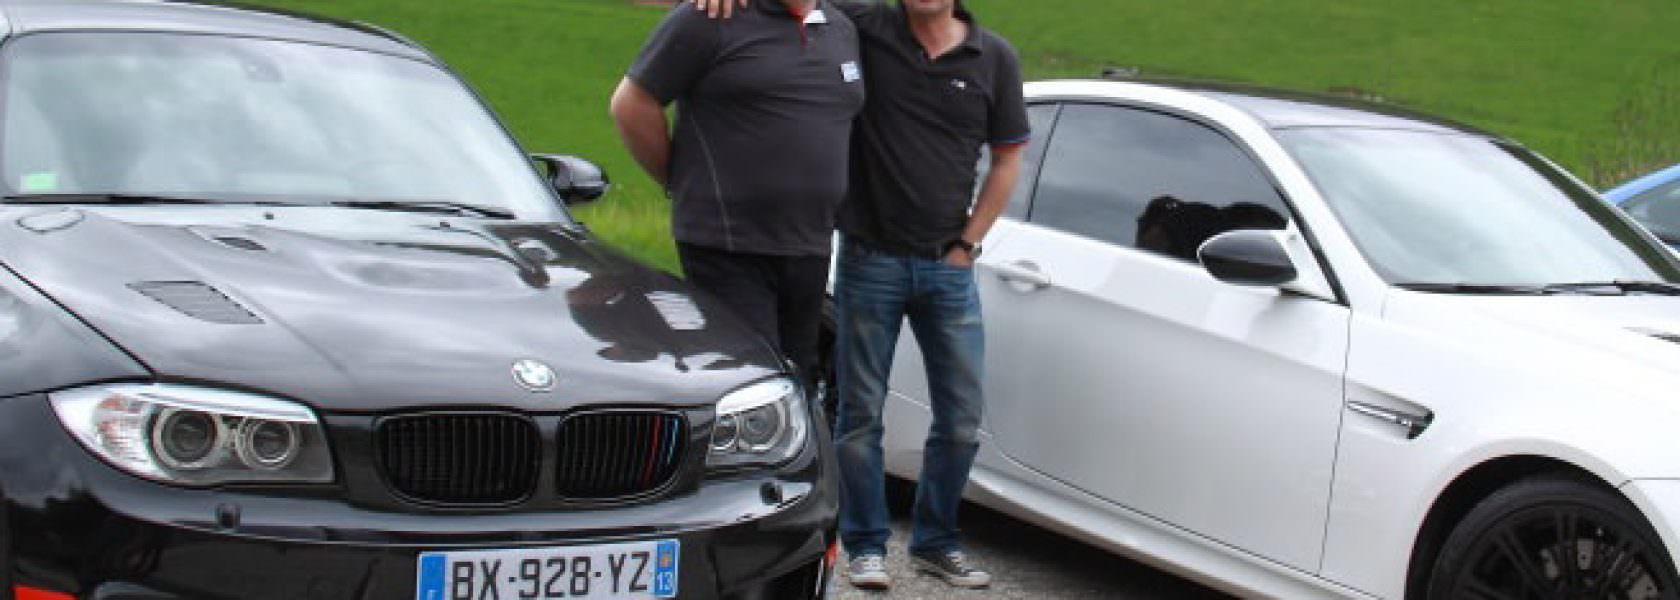 Echange entre deux passionnés BMW